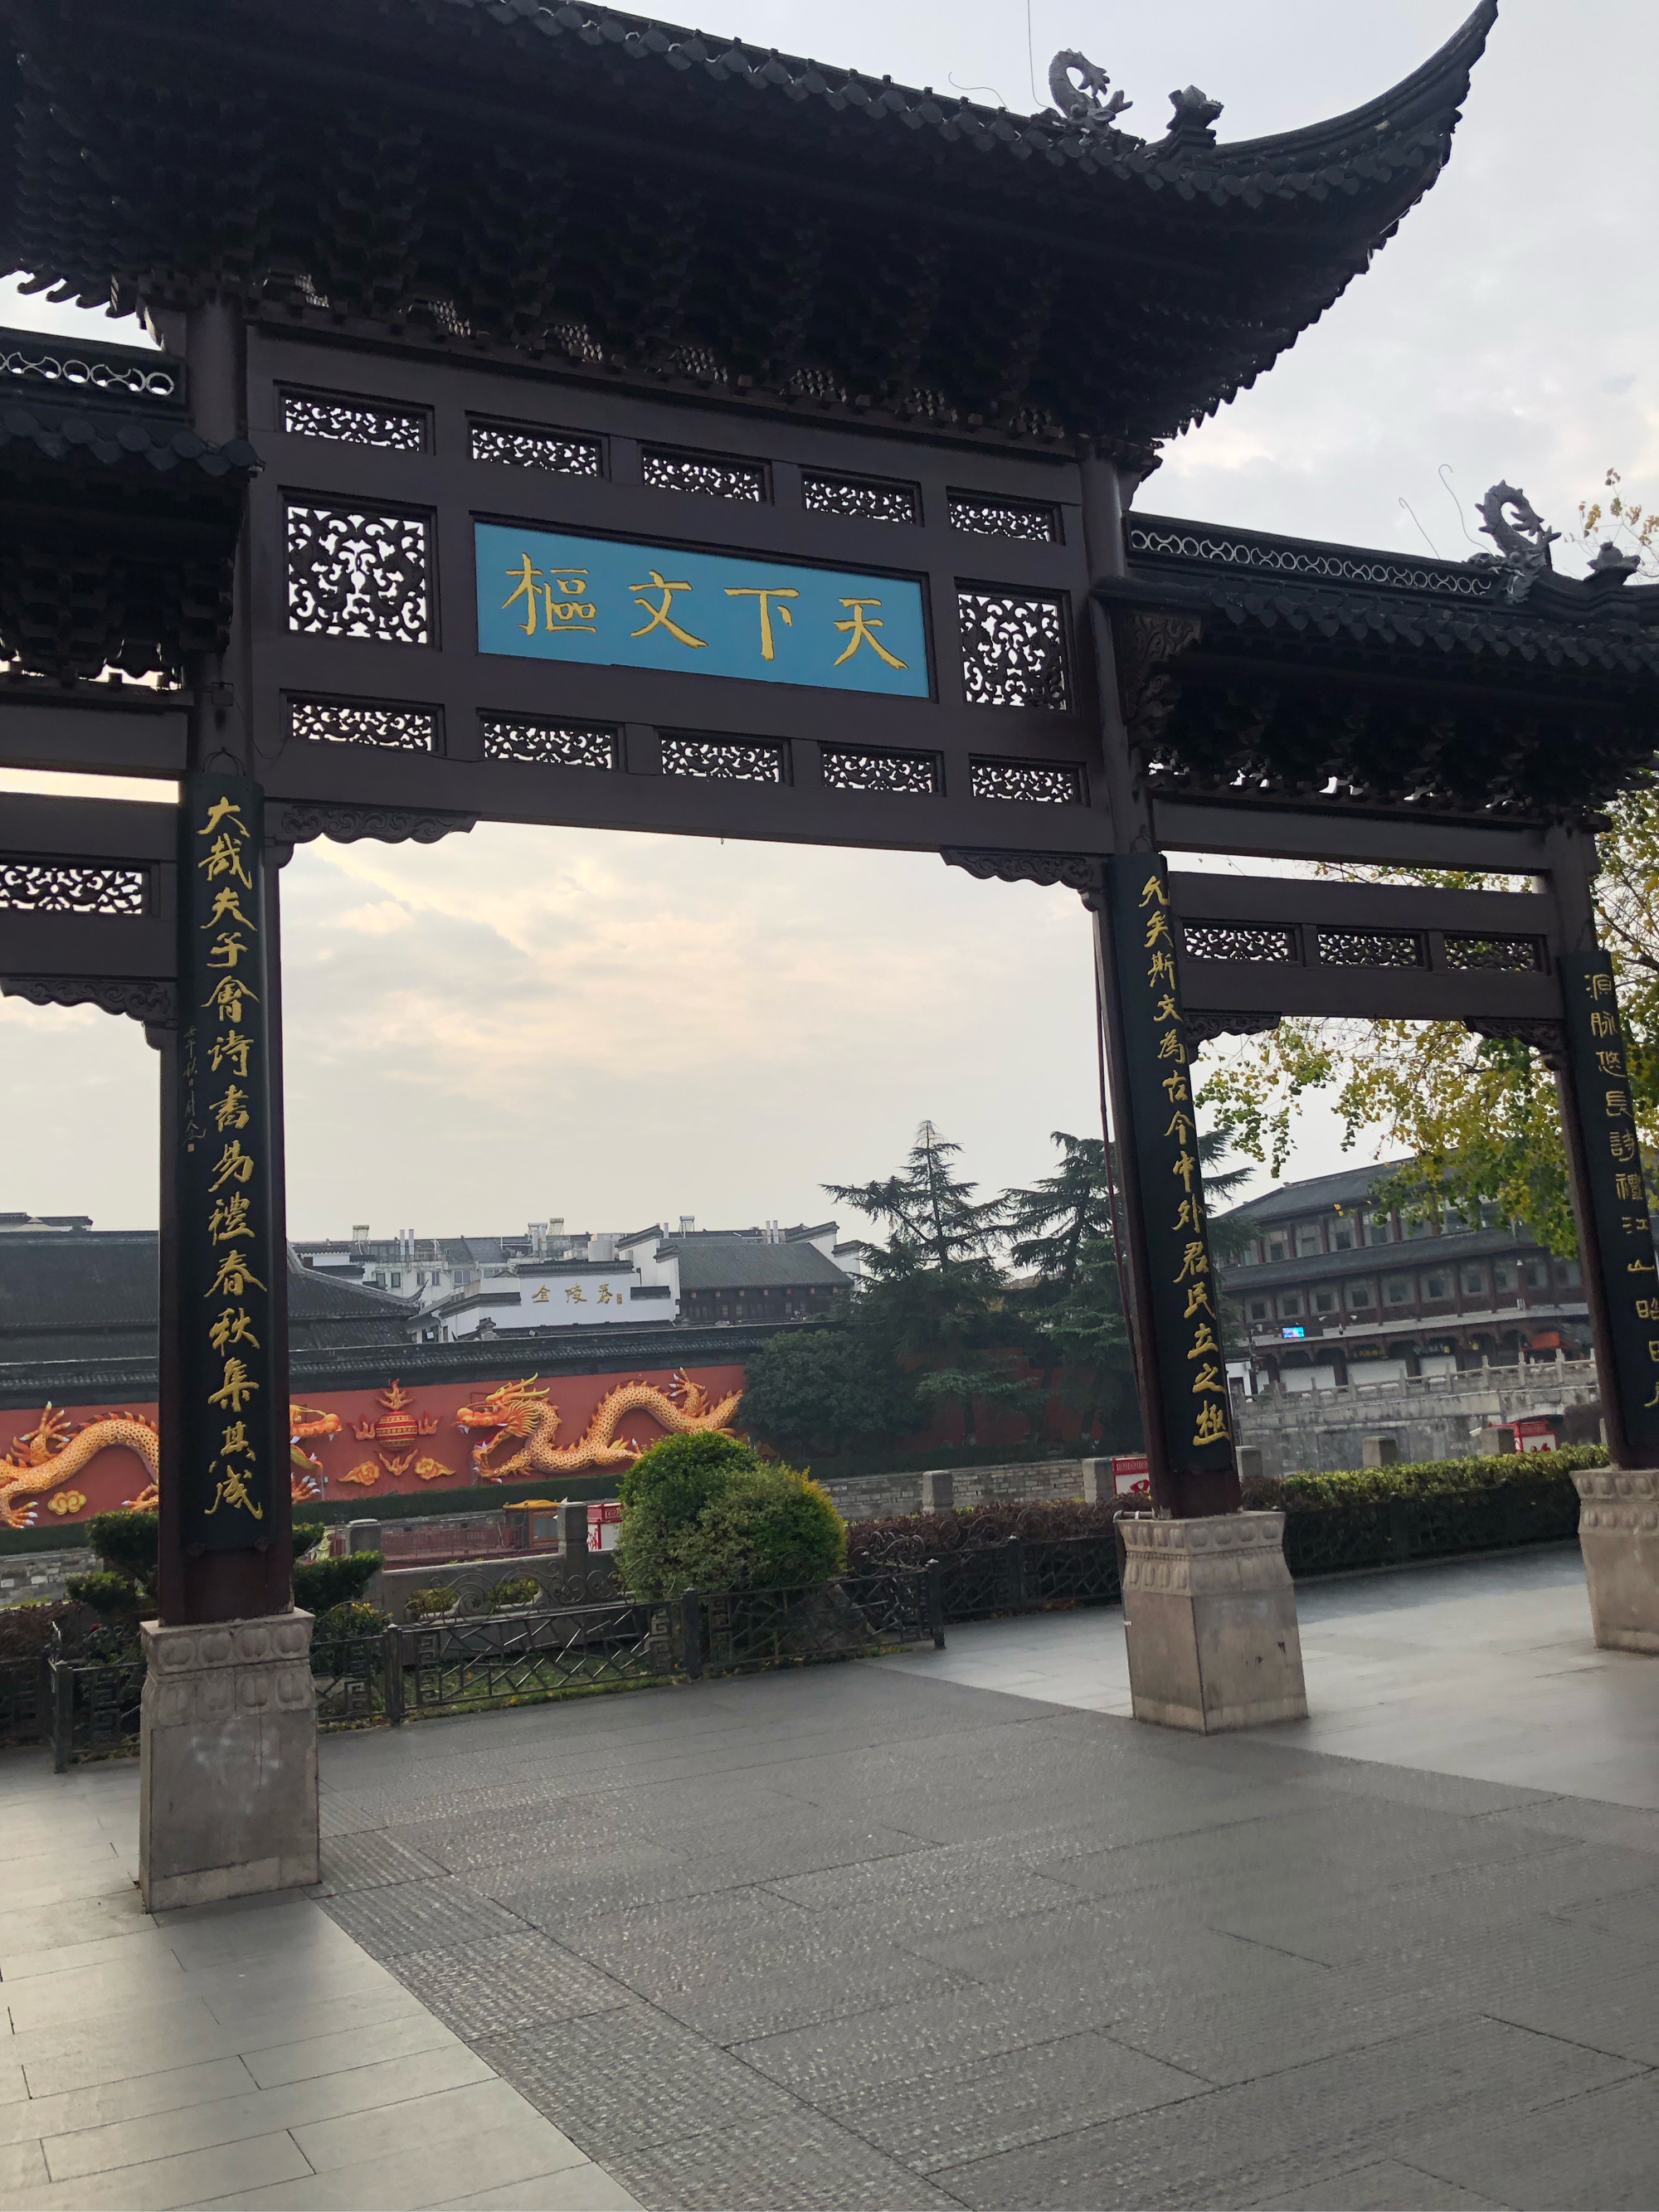 乌衣巷,来燕桥,朱雀桥 夫子庙景点作为南京的一张名片之一,绝对值你到